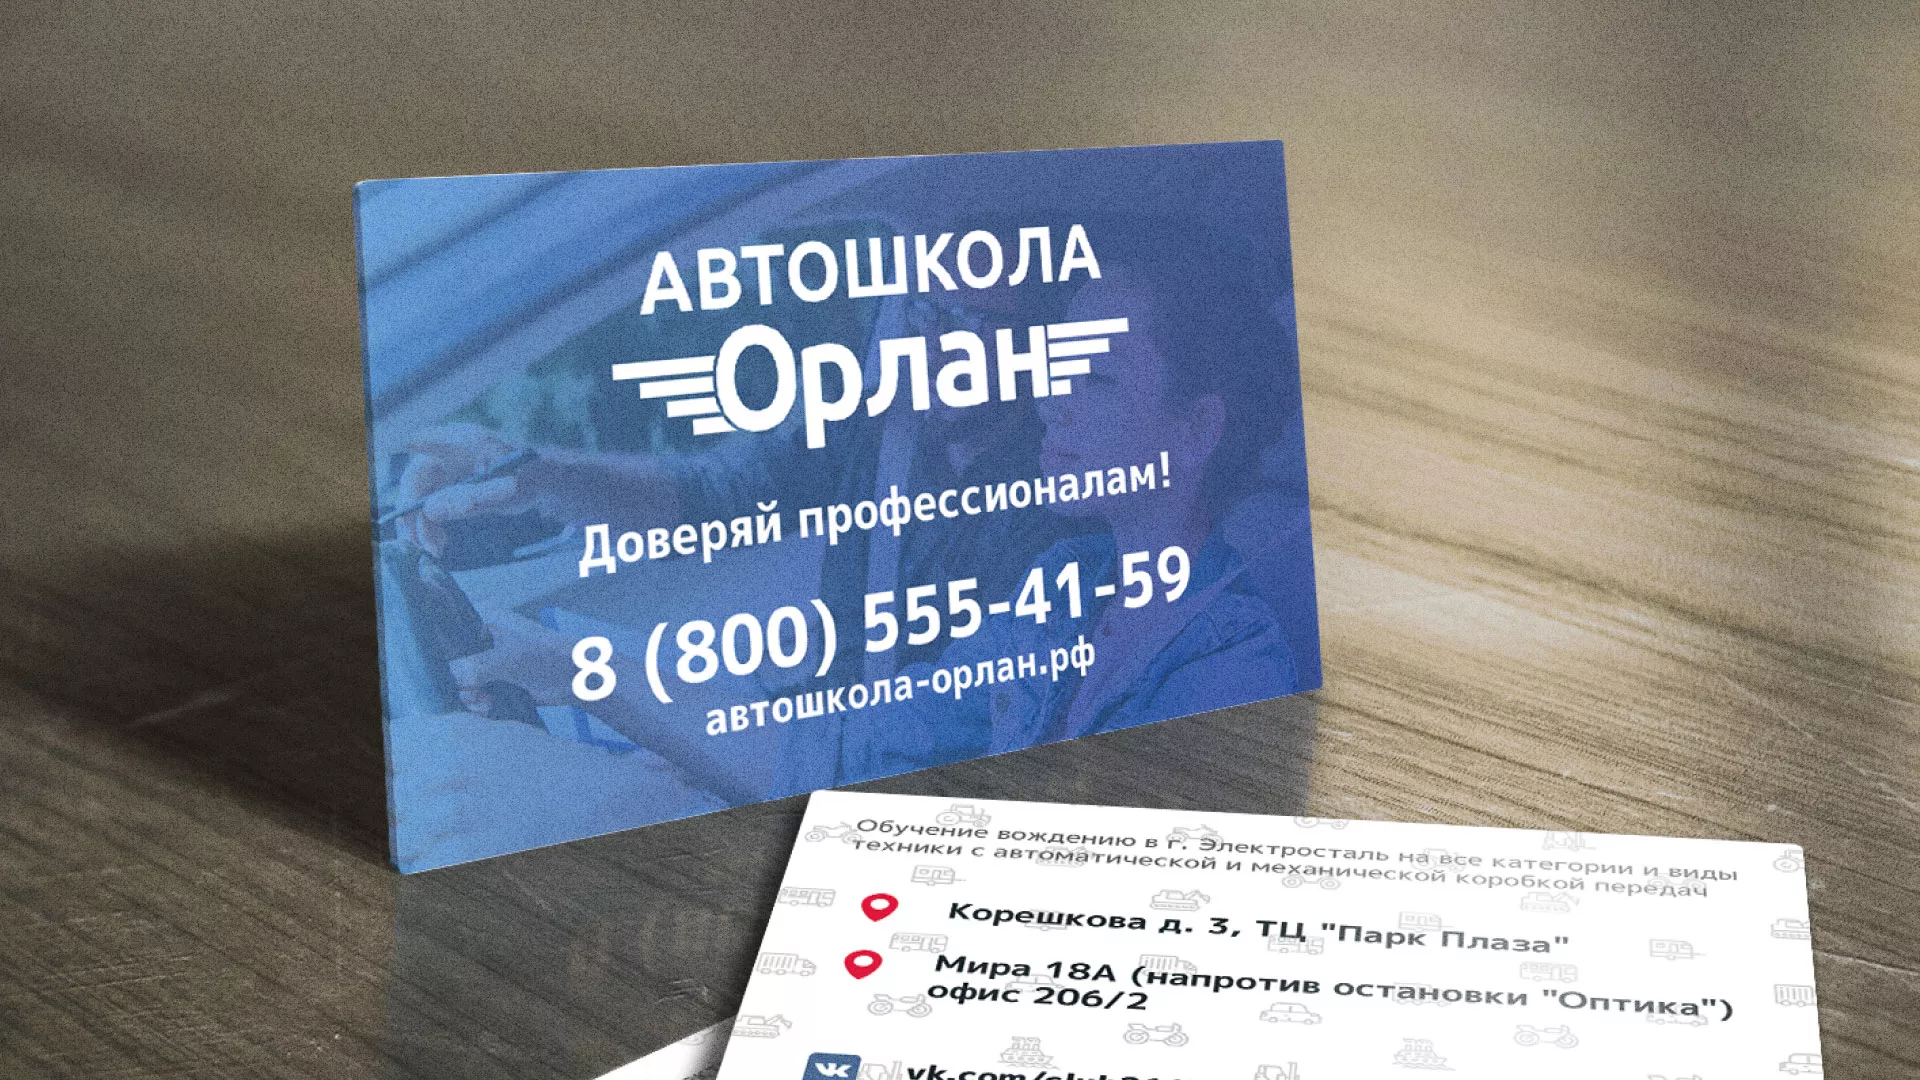 Дизайн рекламных визиток для автошколы «Орлан» в Жуковке